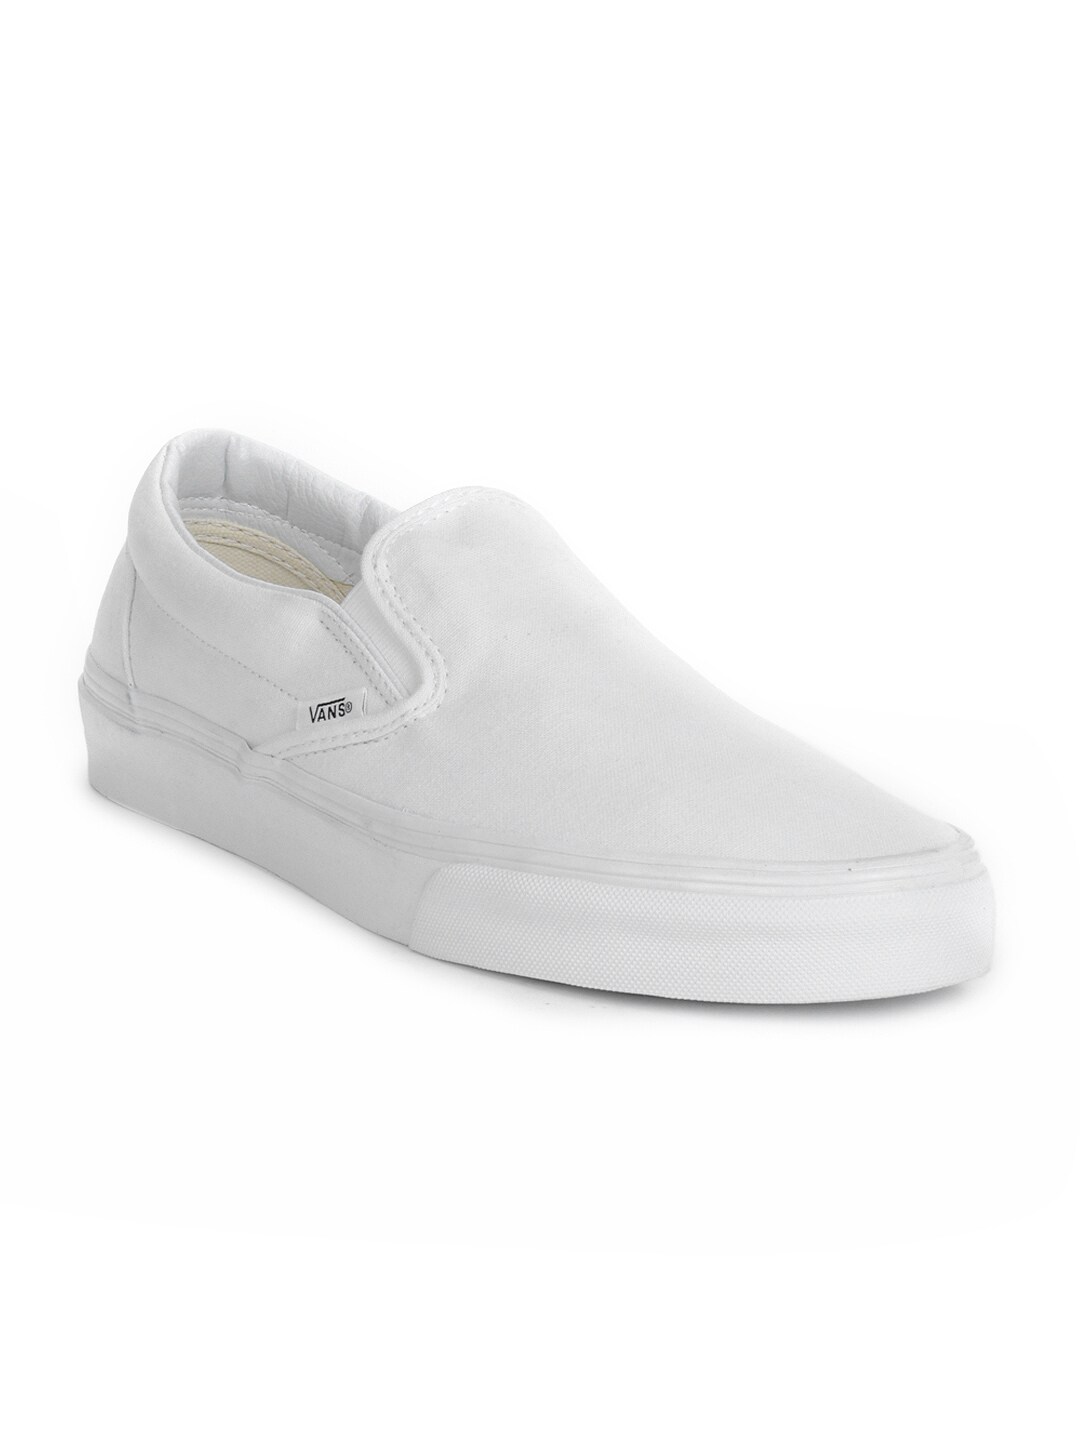 Vans Men White Shoes